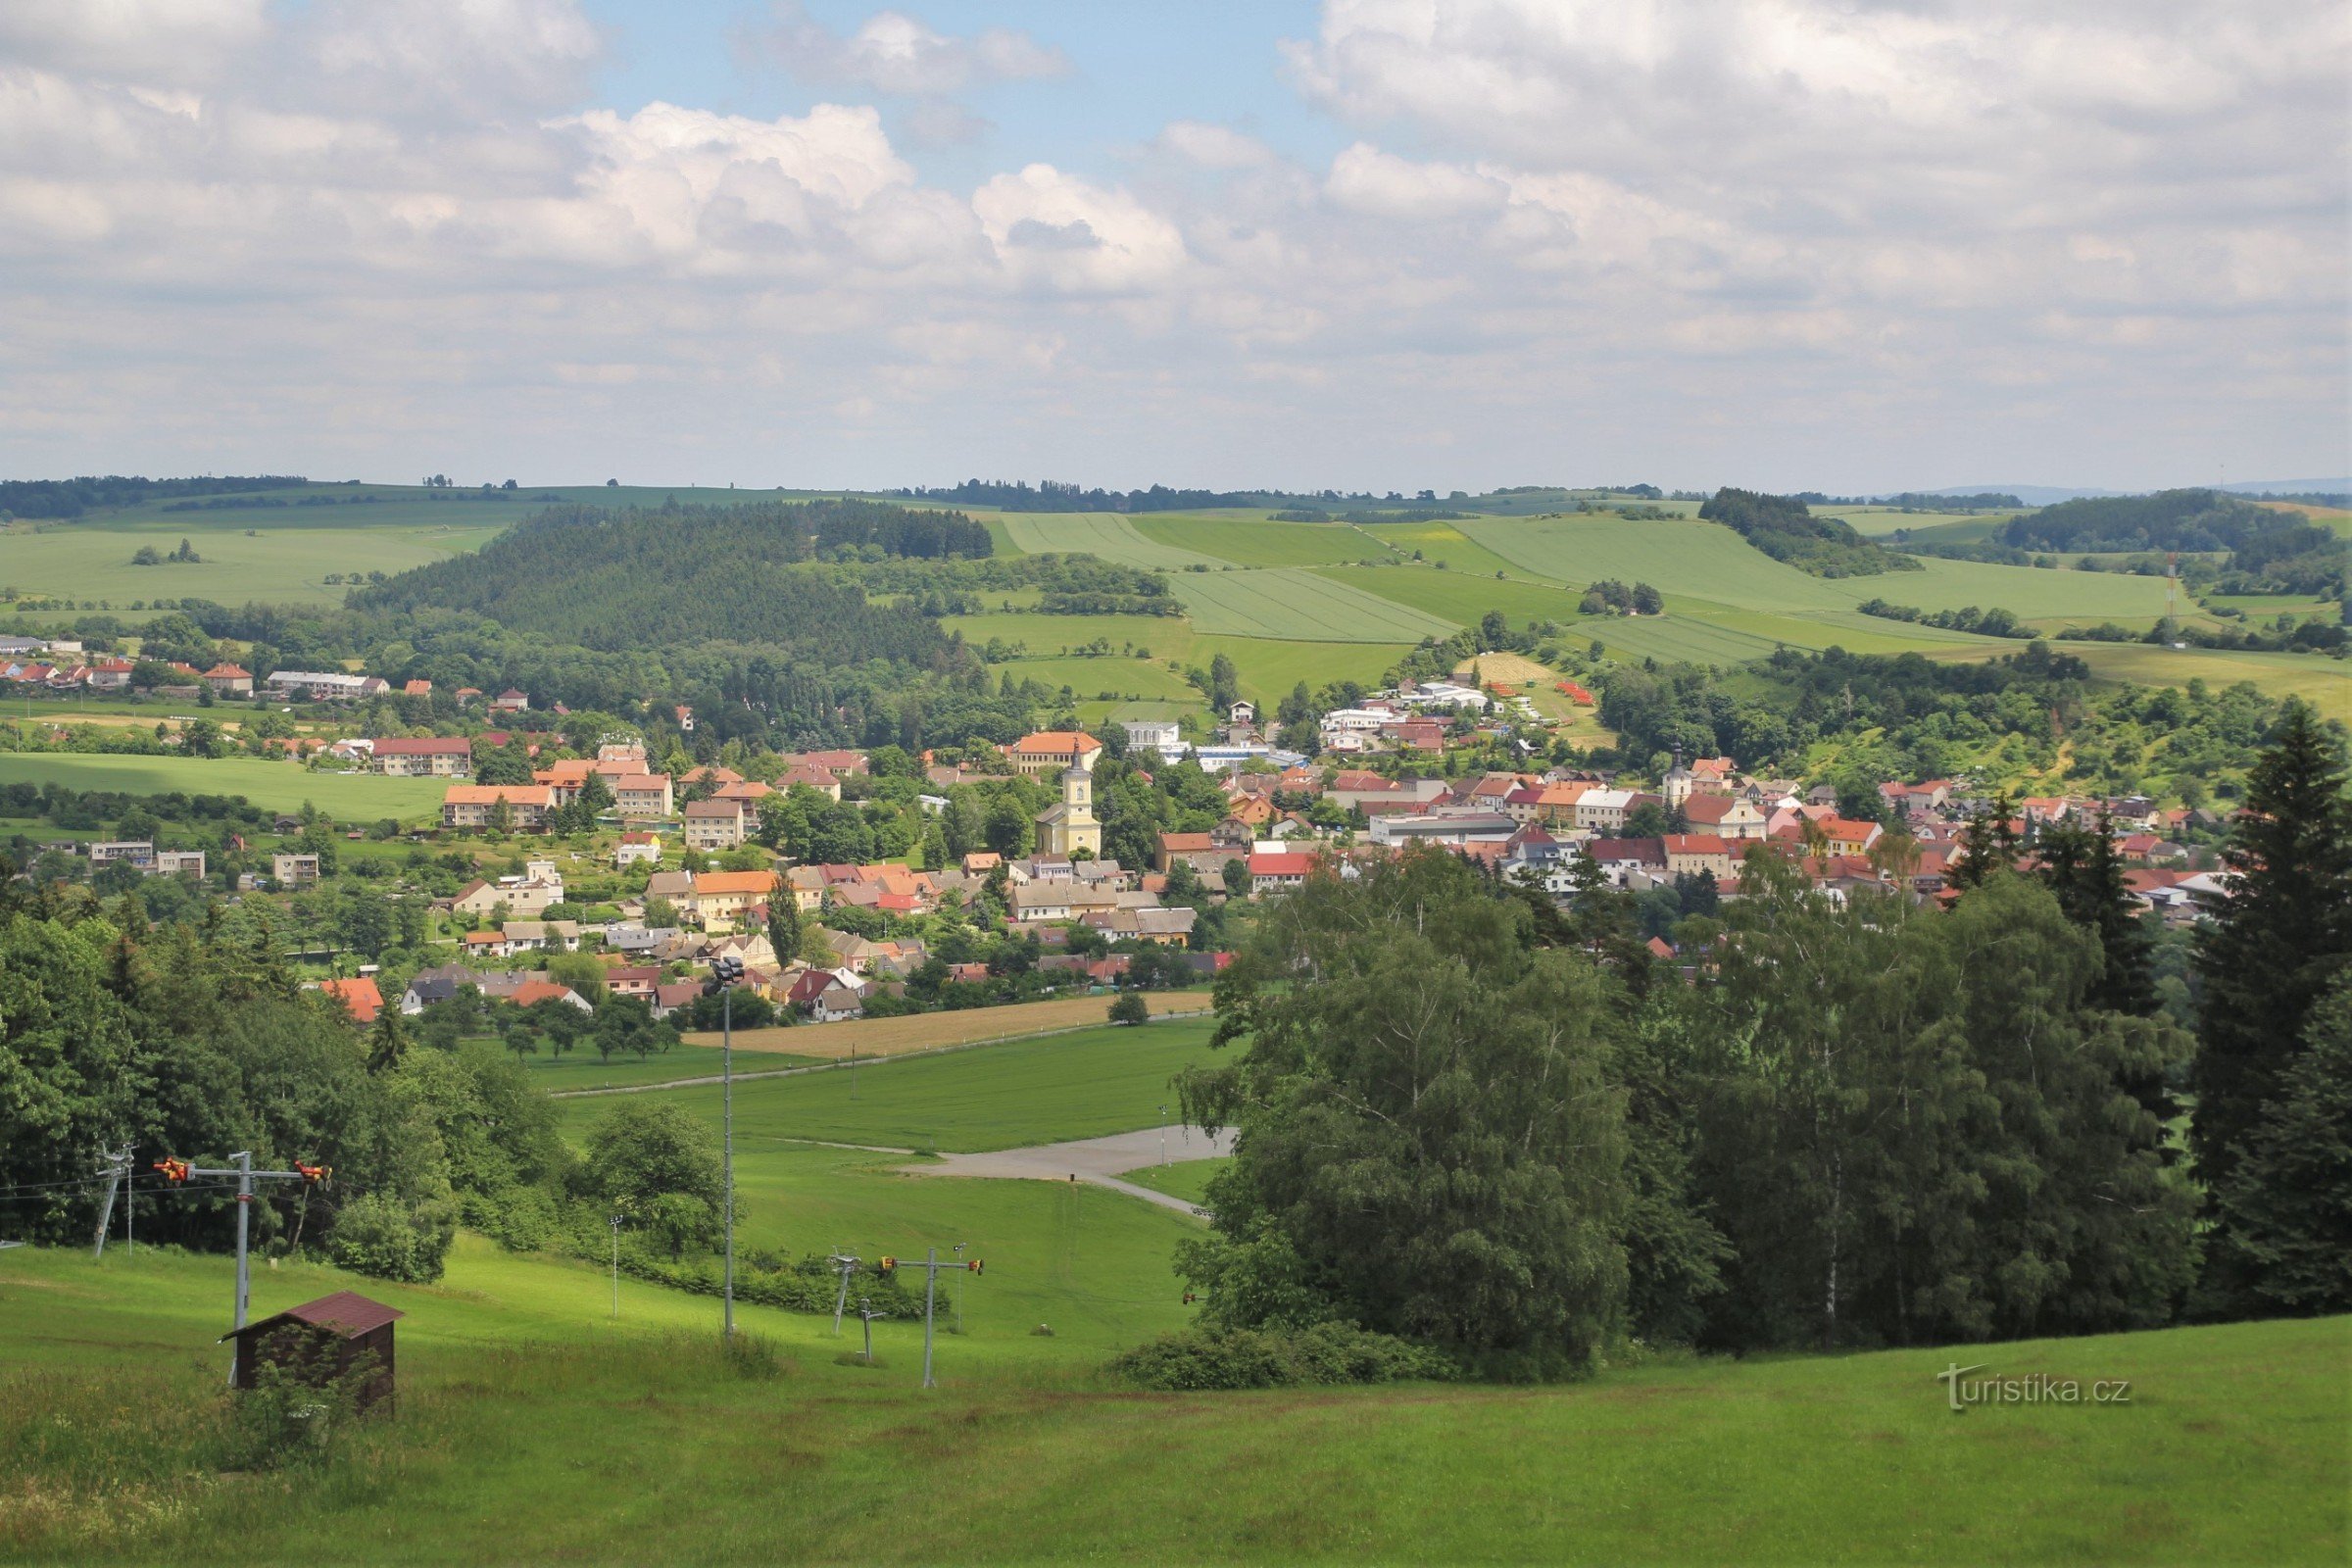 Utsikt över staden Olešnice från utsiktstornet